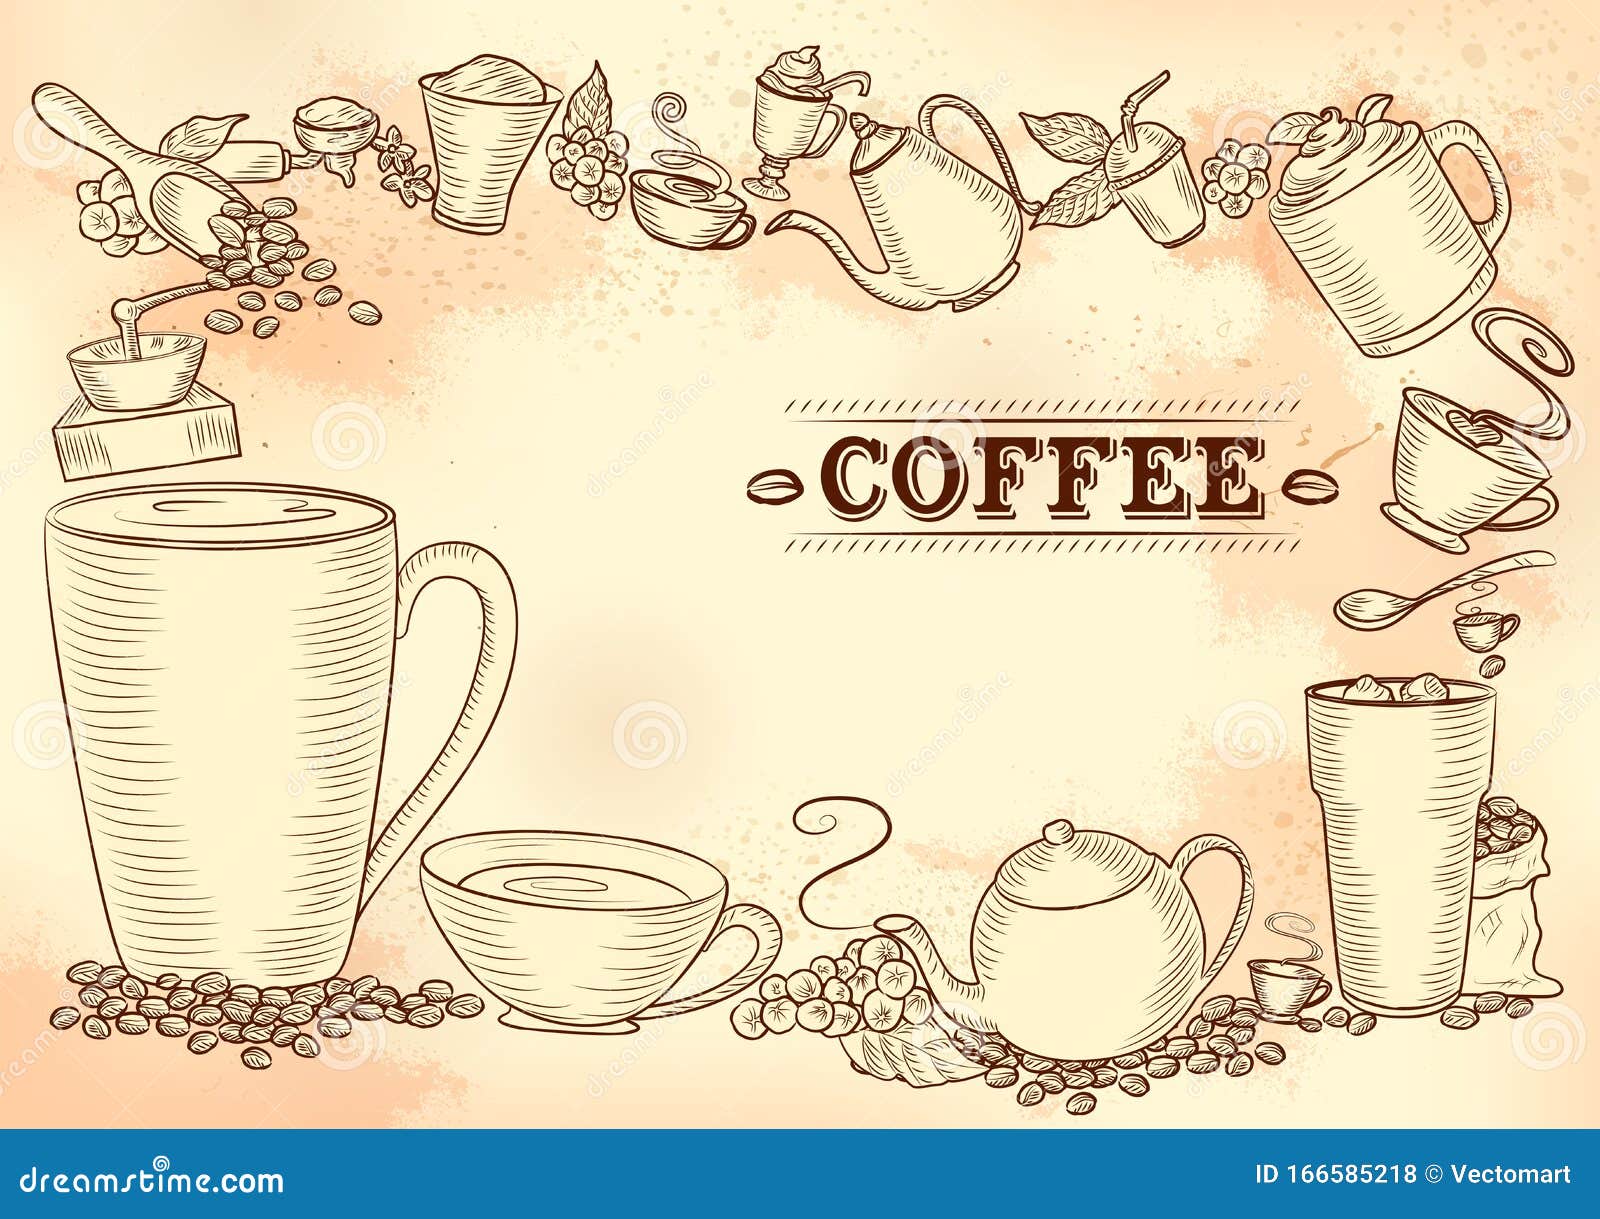 Thư giãn và tận hưởng hương vị cà phê với thực đơn nhiều loại cà phê đa dạng và phong phú. Thực đơn cà phê sẵn sàng thỏa mãn sự tò mò của bạn về những loại cà phê mới lạ.